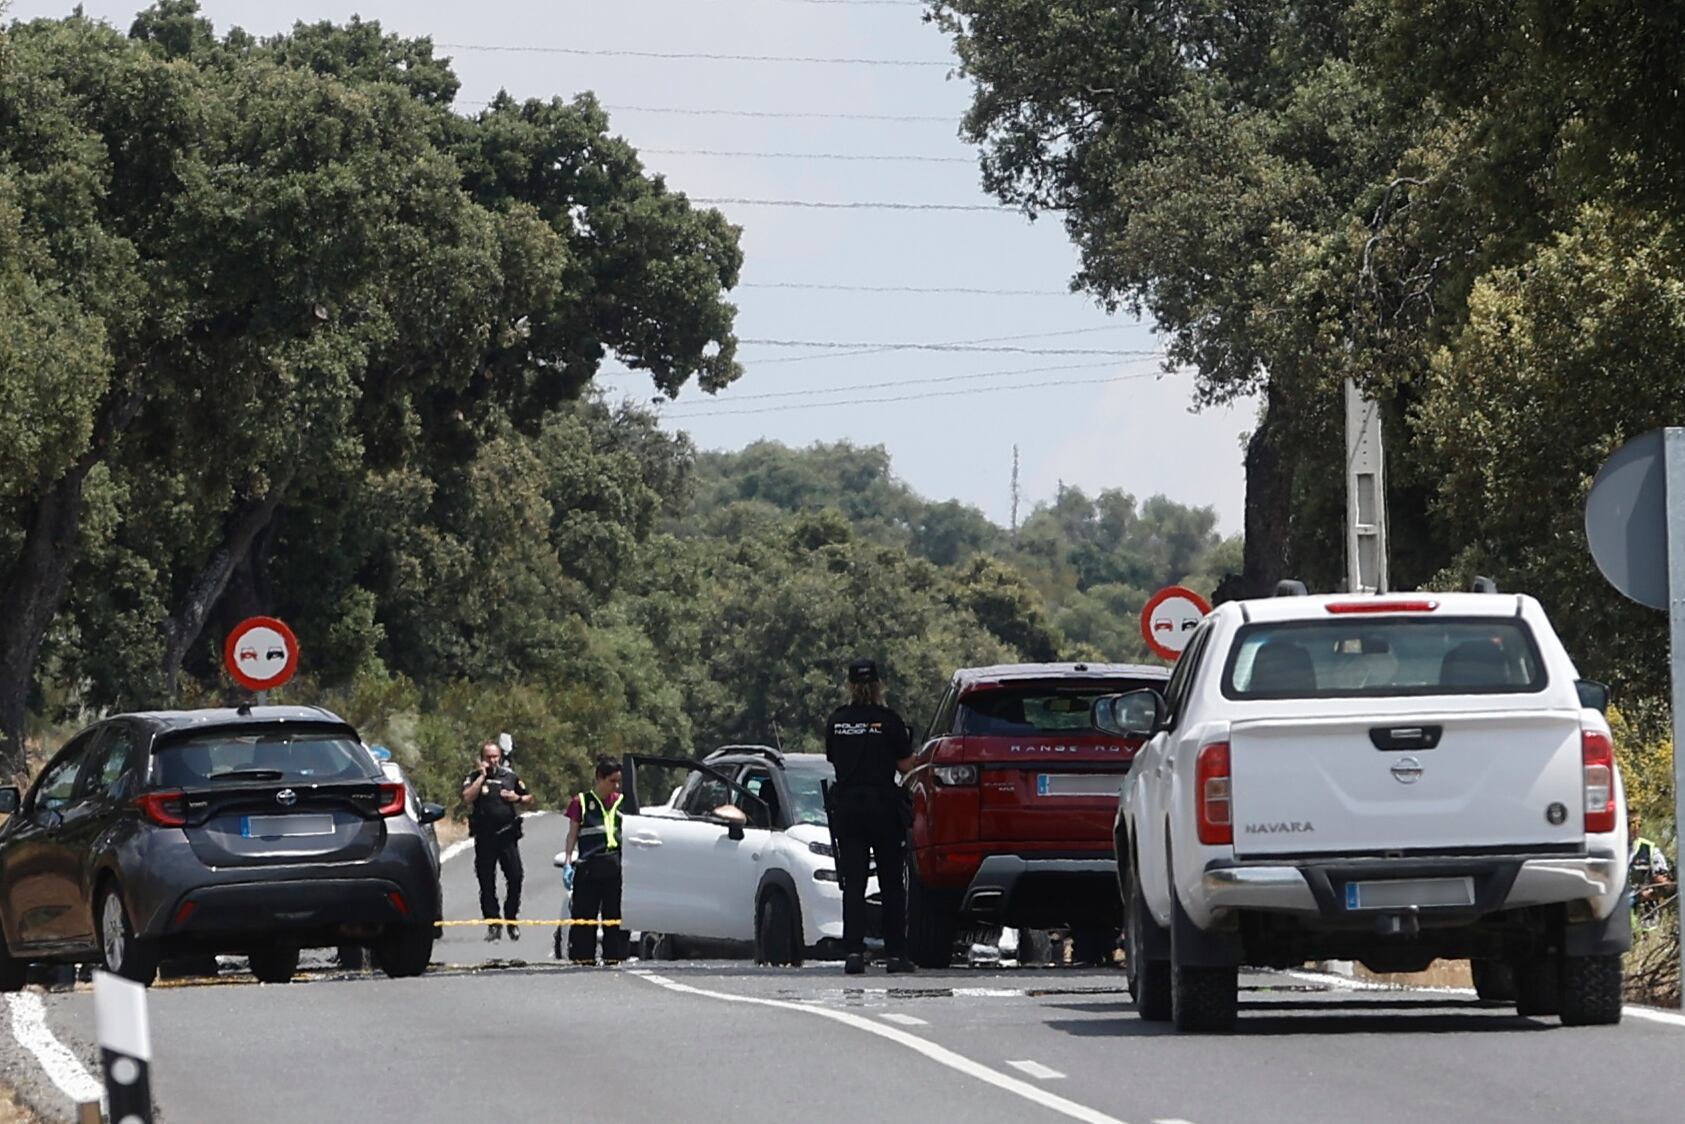 Vista del punto kilométrico 6 de la carretera de Fuencarral-El Pardo,  cortada por la policía cerca del lugar del suceso, este martes.